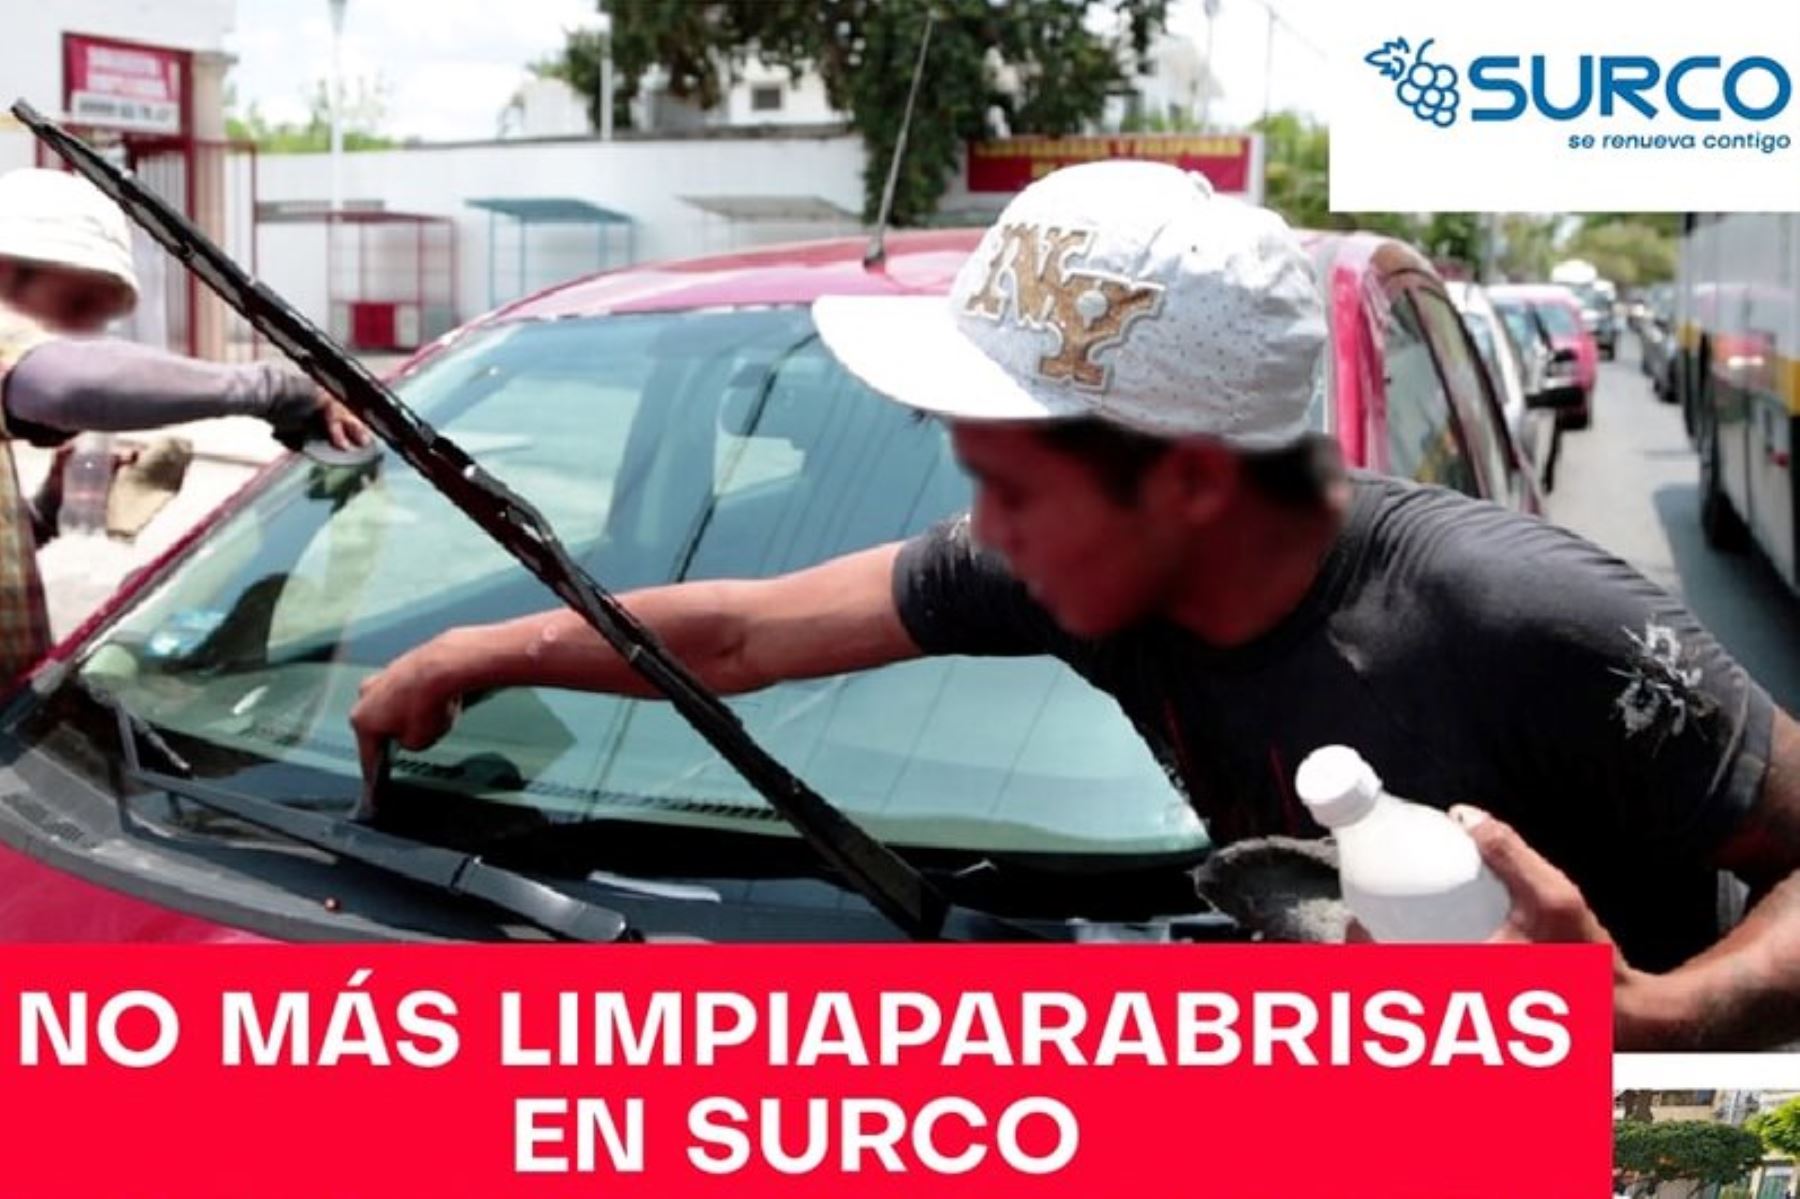 Surco: prohíben actividad ambulatoria de limpiadores de lunas y lavadores de vehículos. Foto: ANDINA/Difusión.